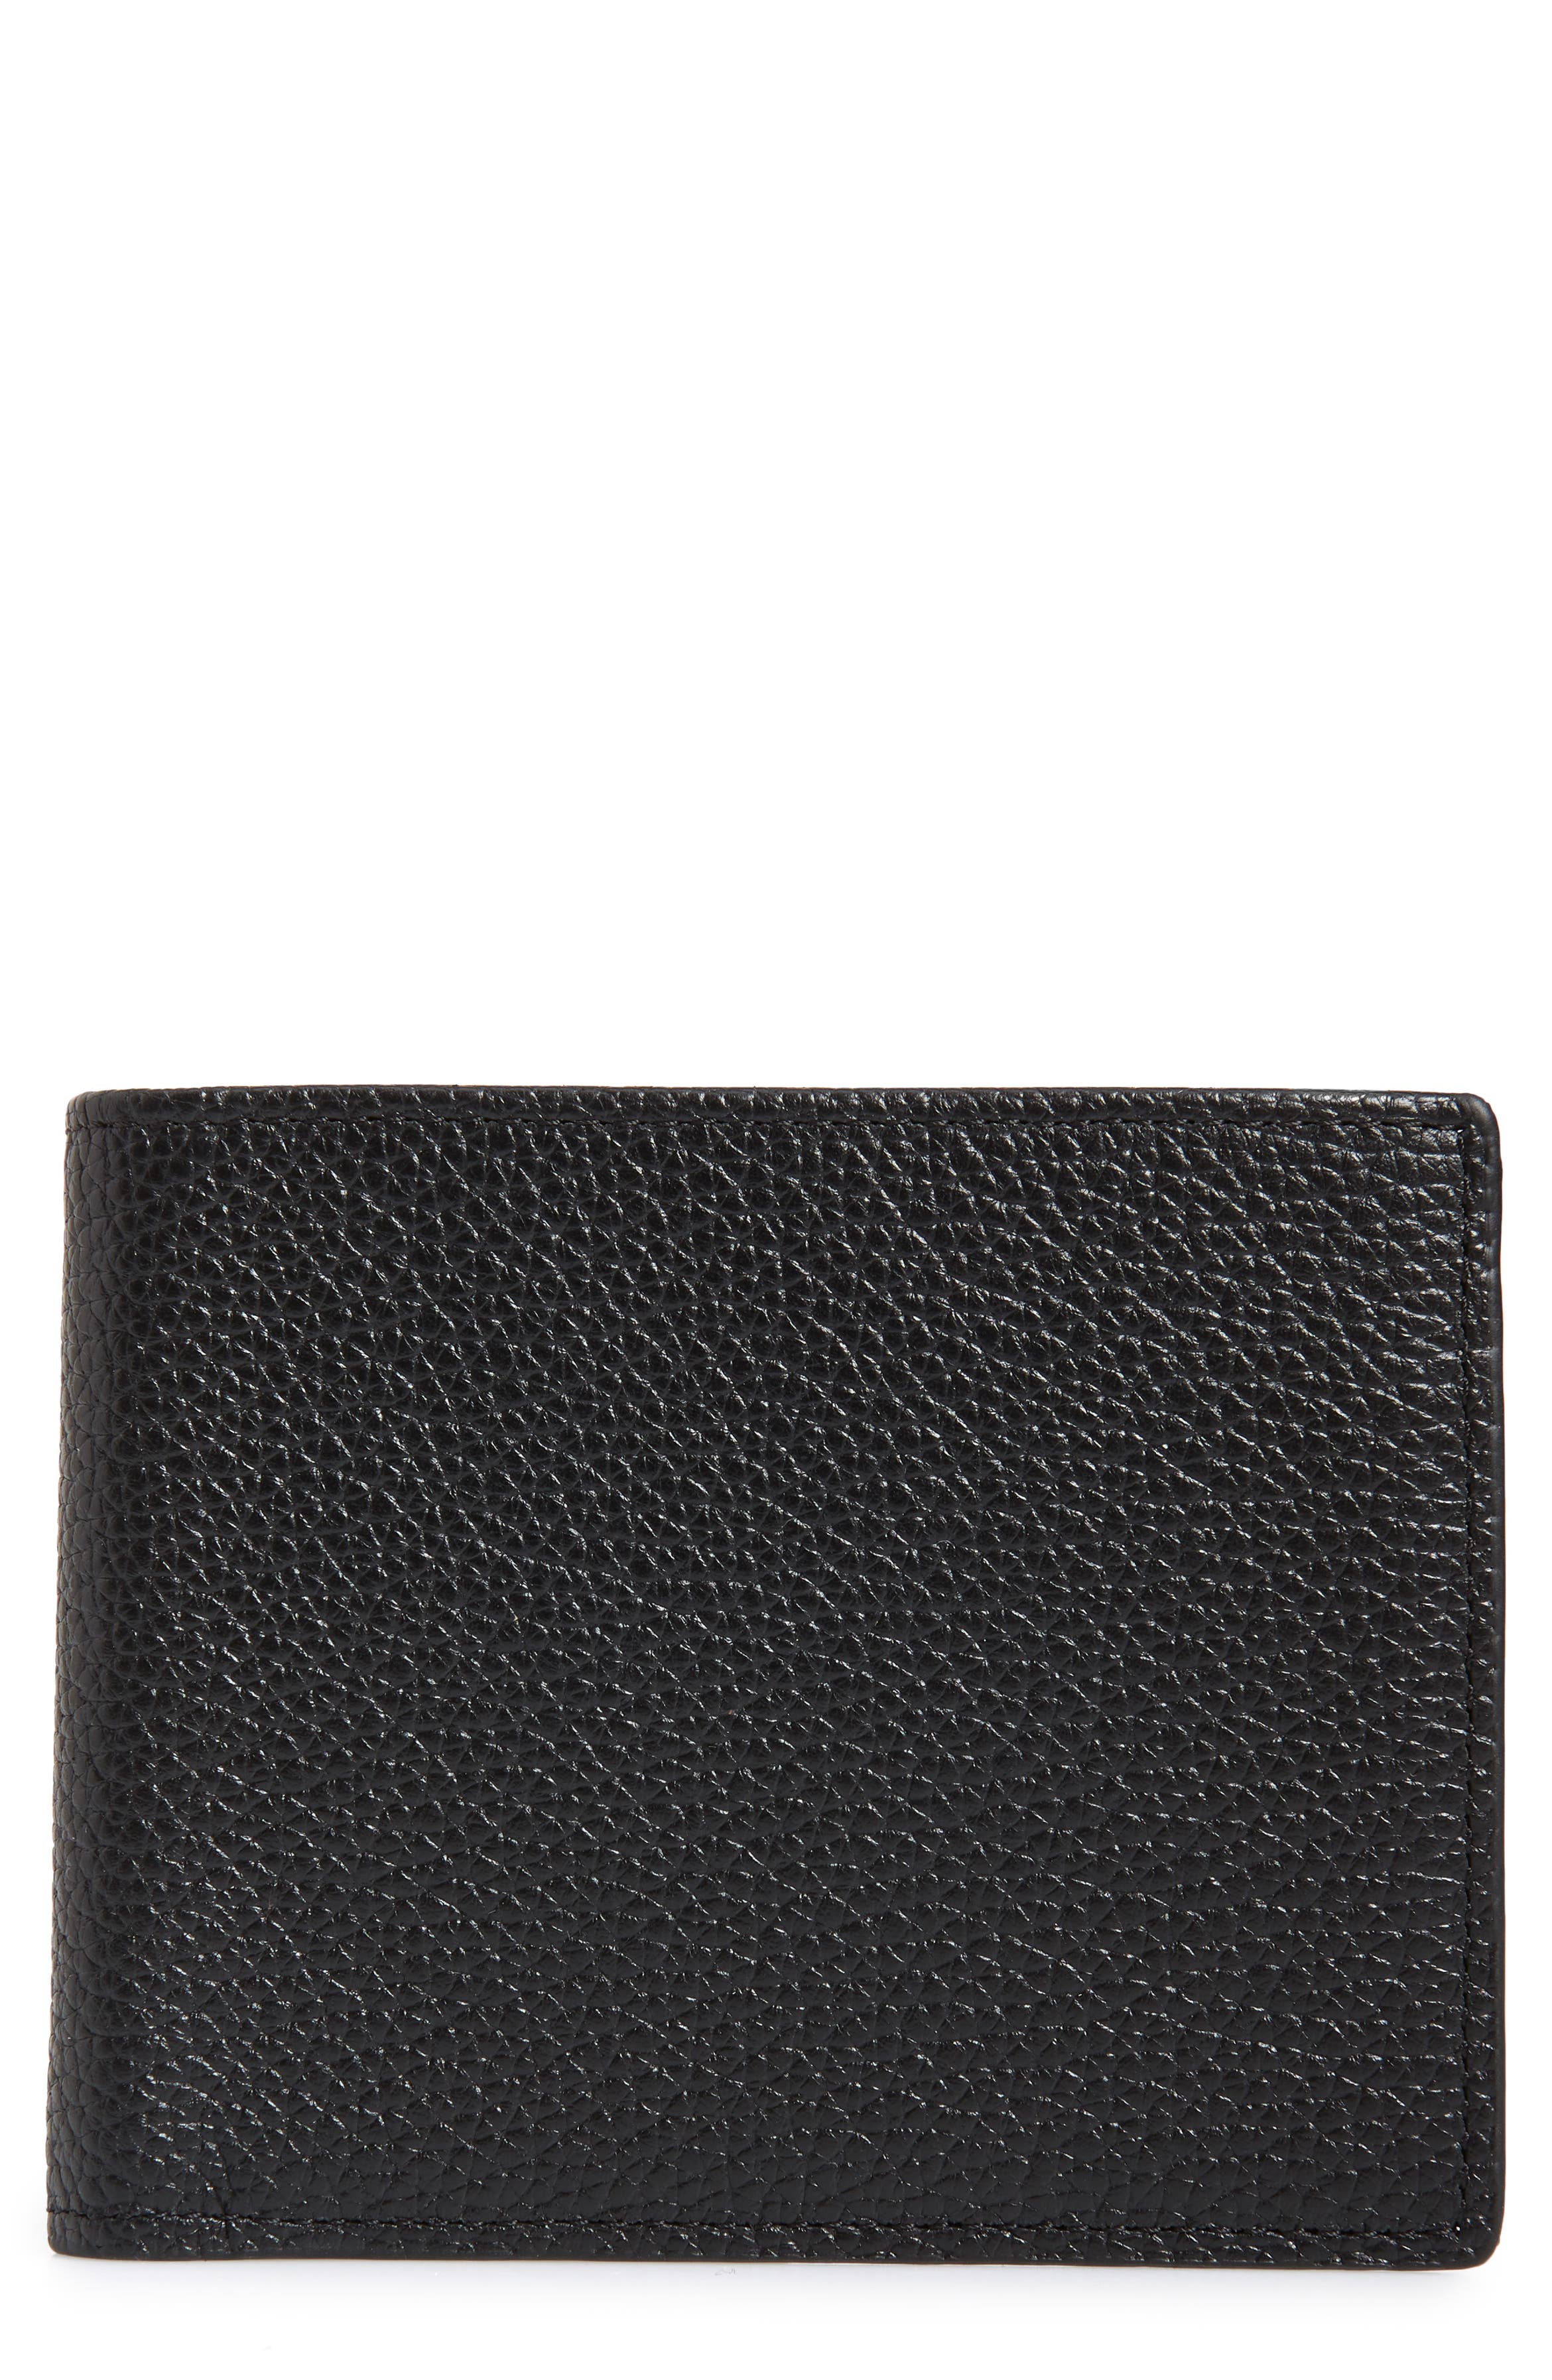 Nordstrom Men's Shop Midland RFID Leather Wallet | Nordstrom